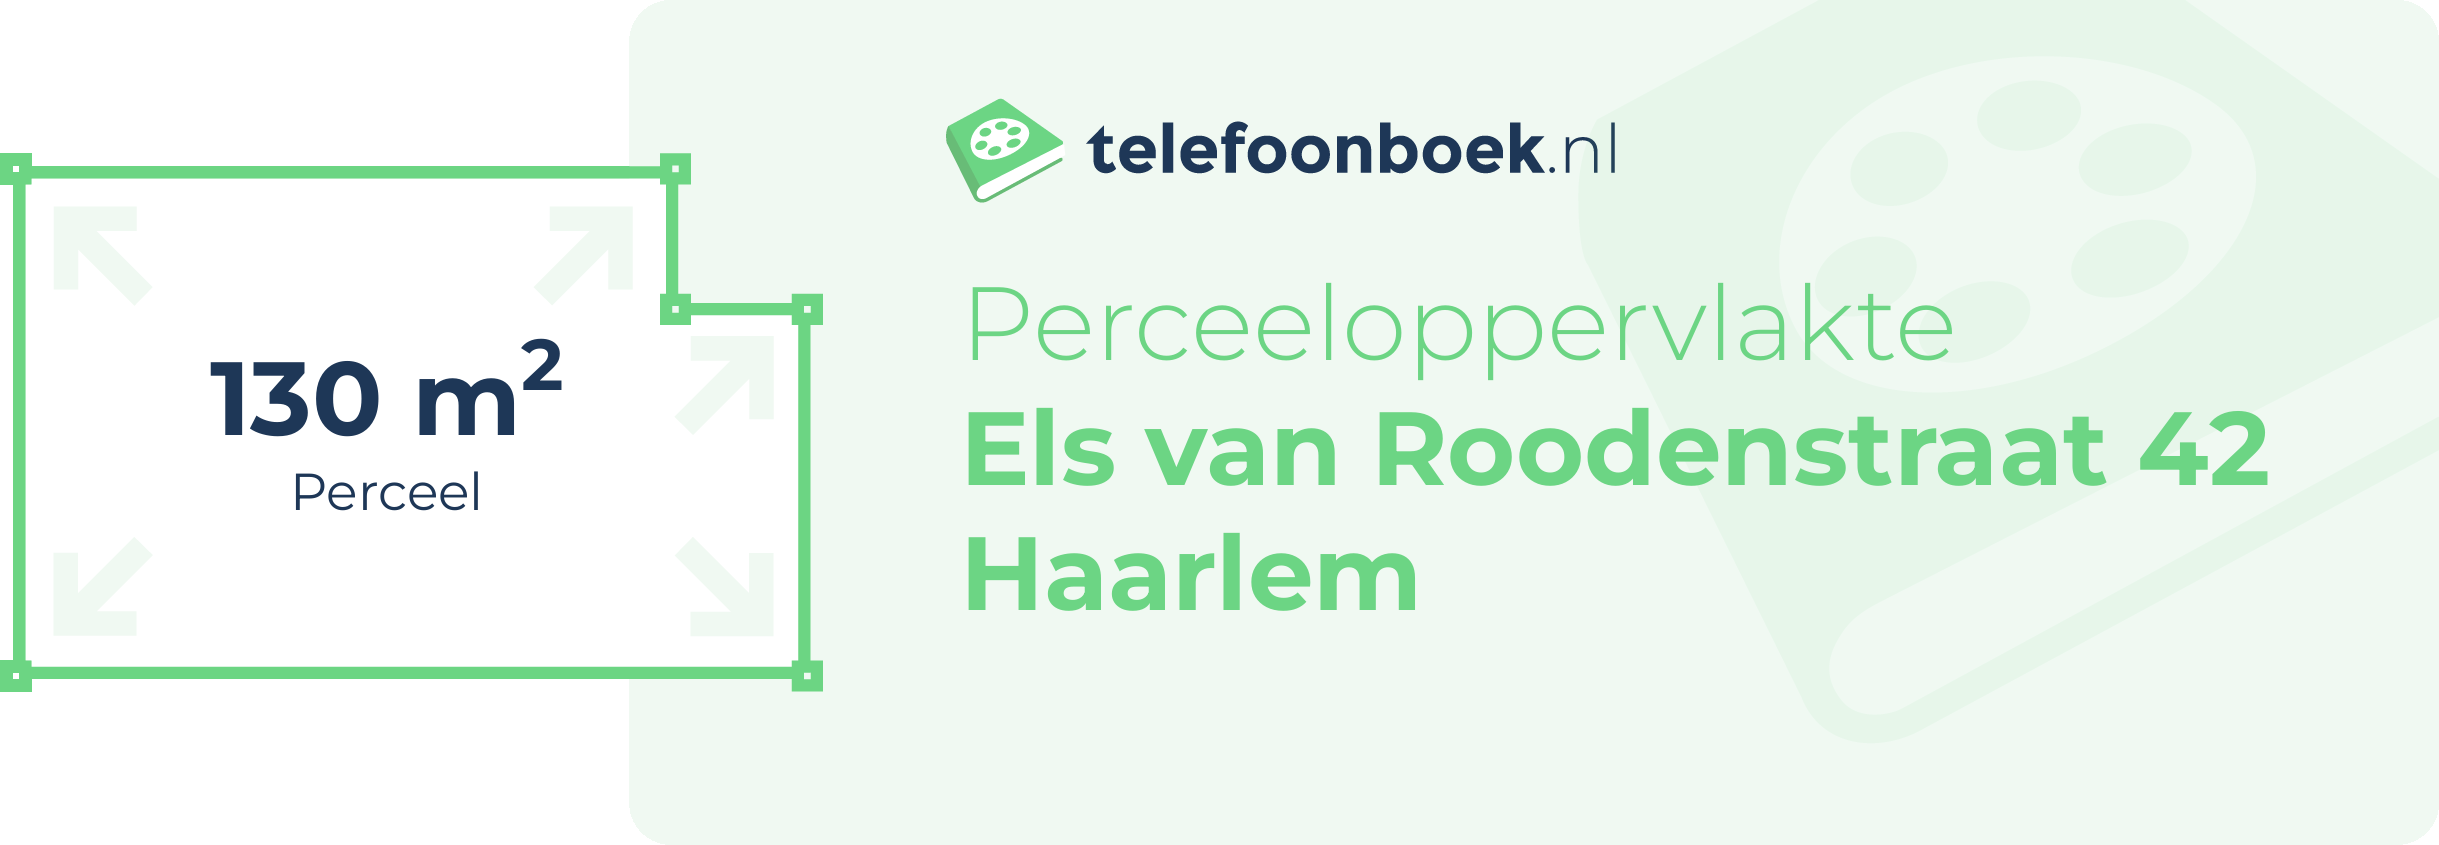 Perceeloppervlakte Els Van Roodenstraat 42 Haarlem